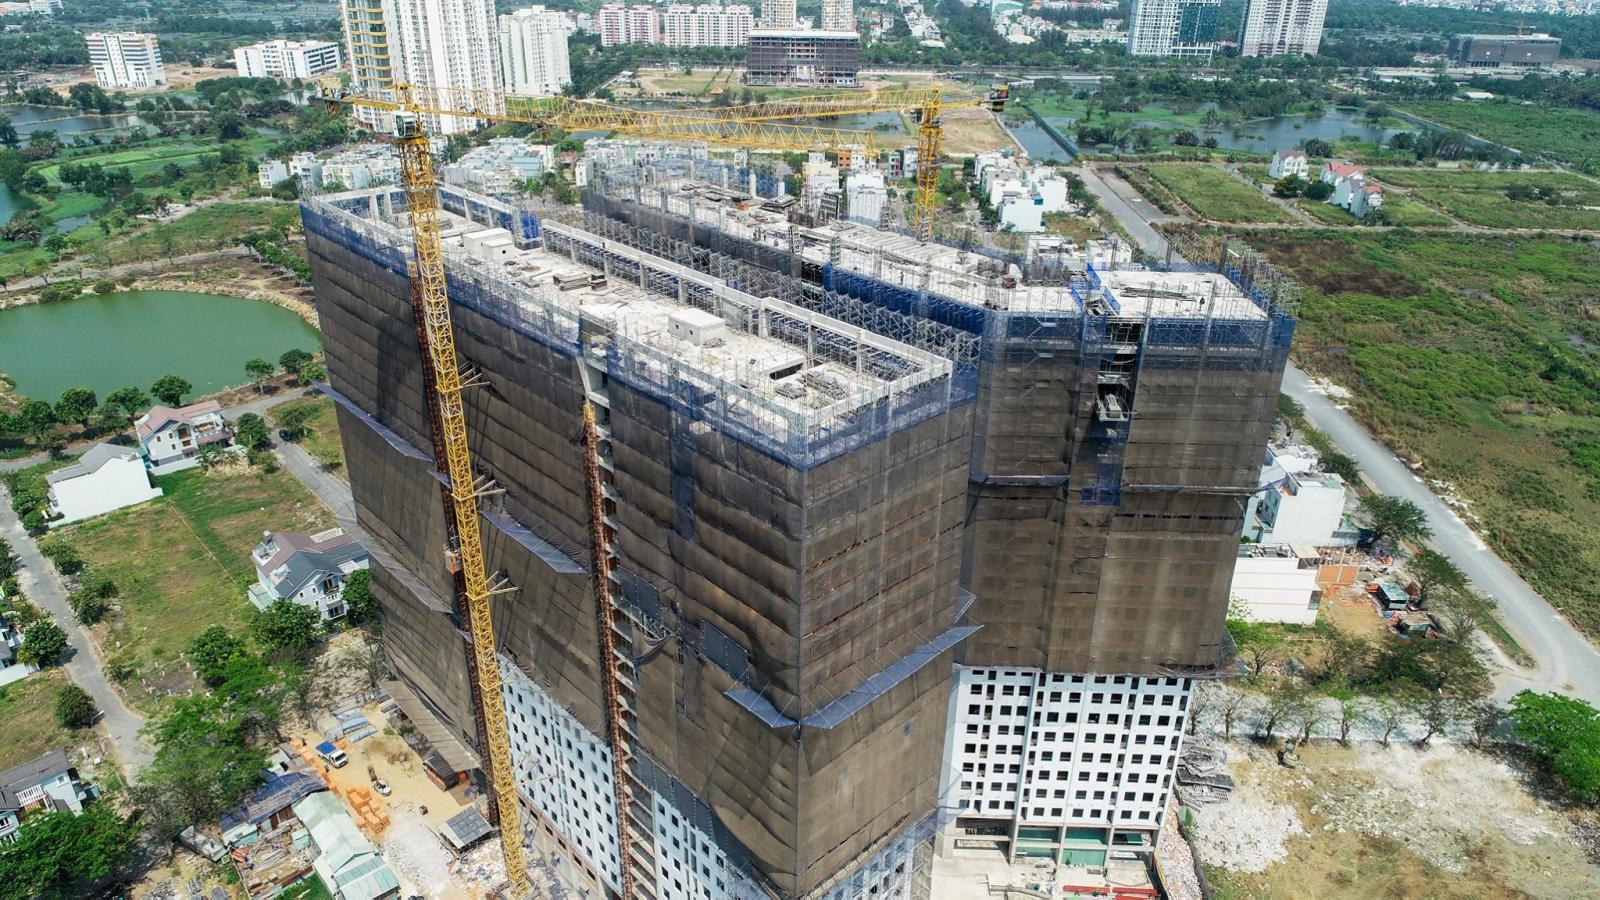 Hình ảnh cận cảnh chụp từ trên cao tòa chung cư cao tầng đang xây dựng, bọc lưới bảo vệ màu xám bên ngoài.